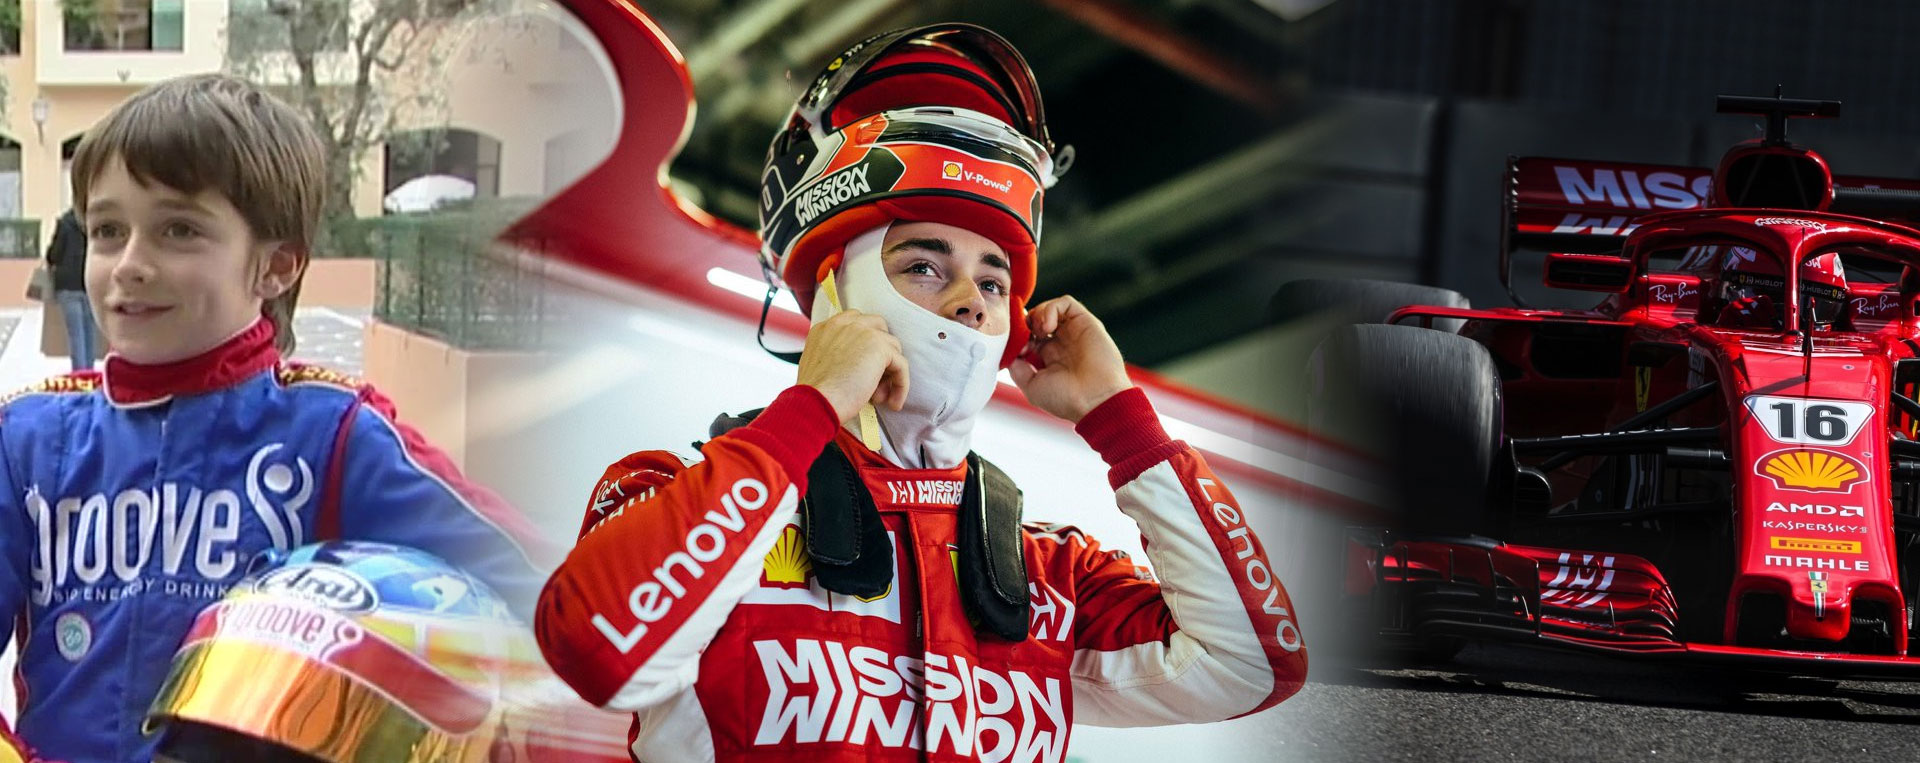 Charles Leclerc, du karting à Ferrari